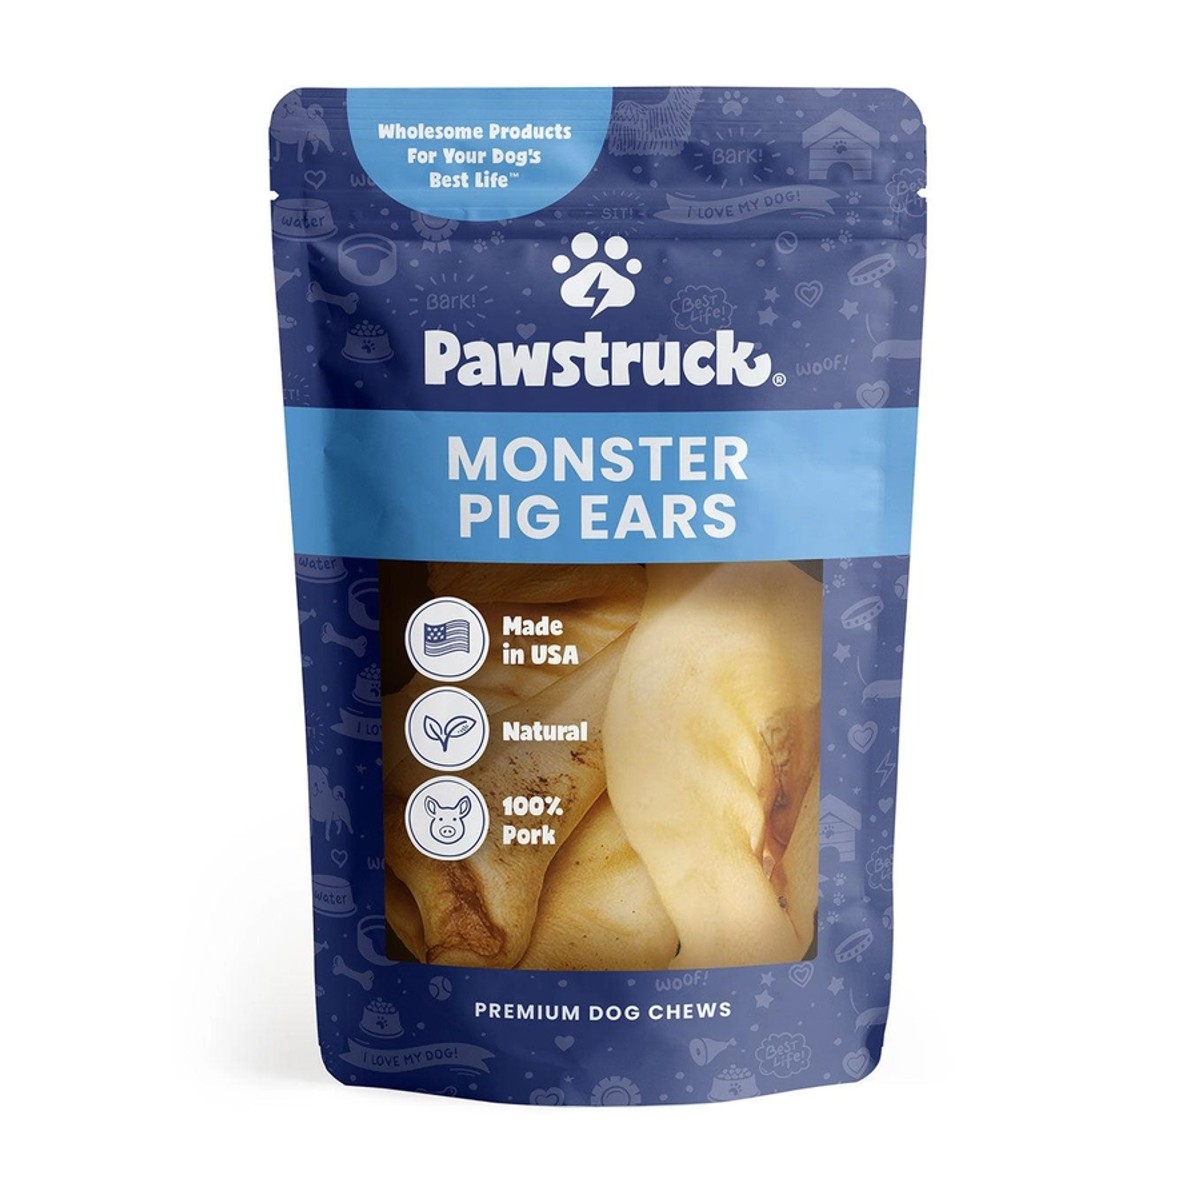 Pawstruck Monster Pig Ears Dog Treats